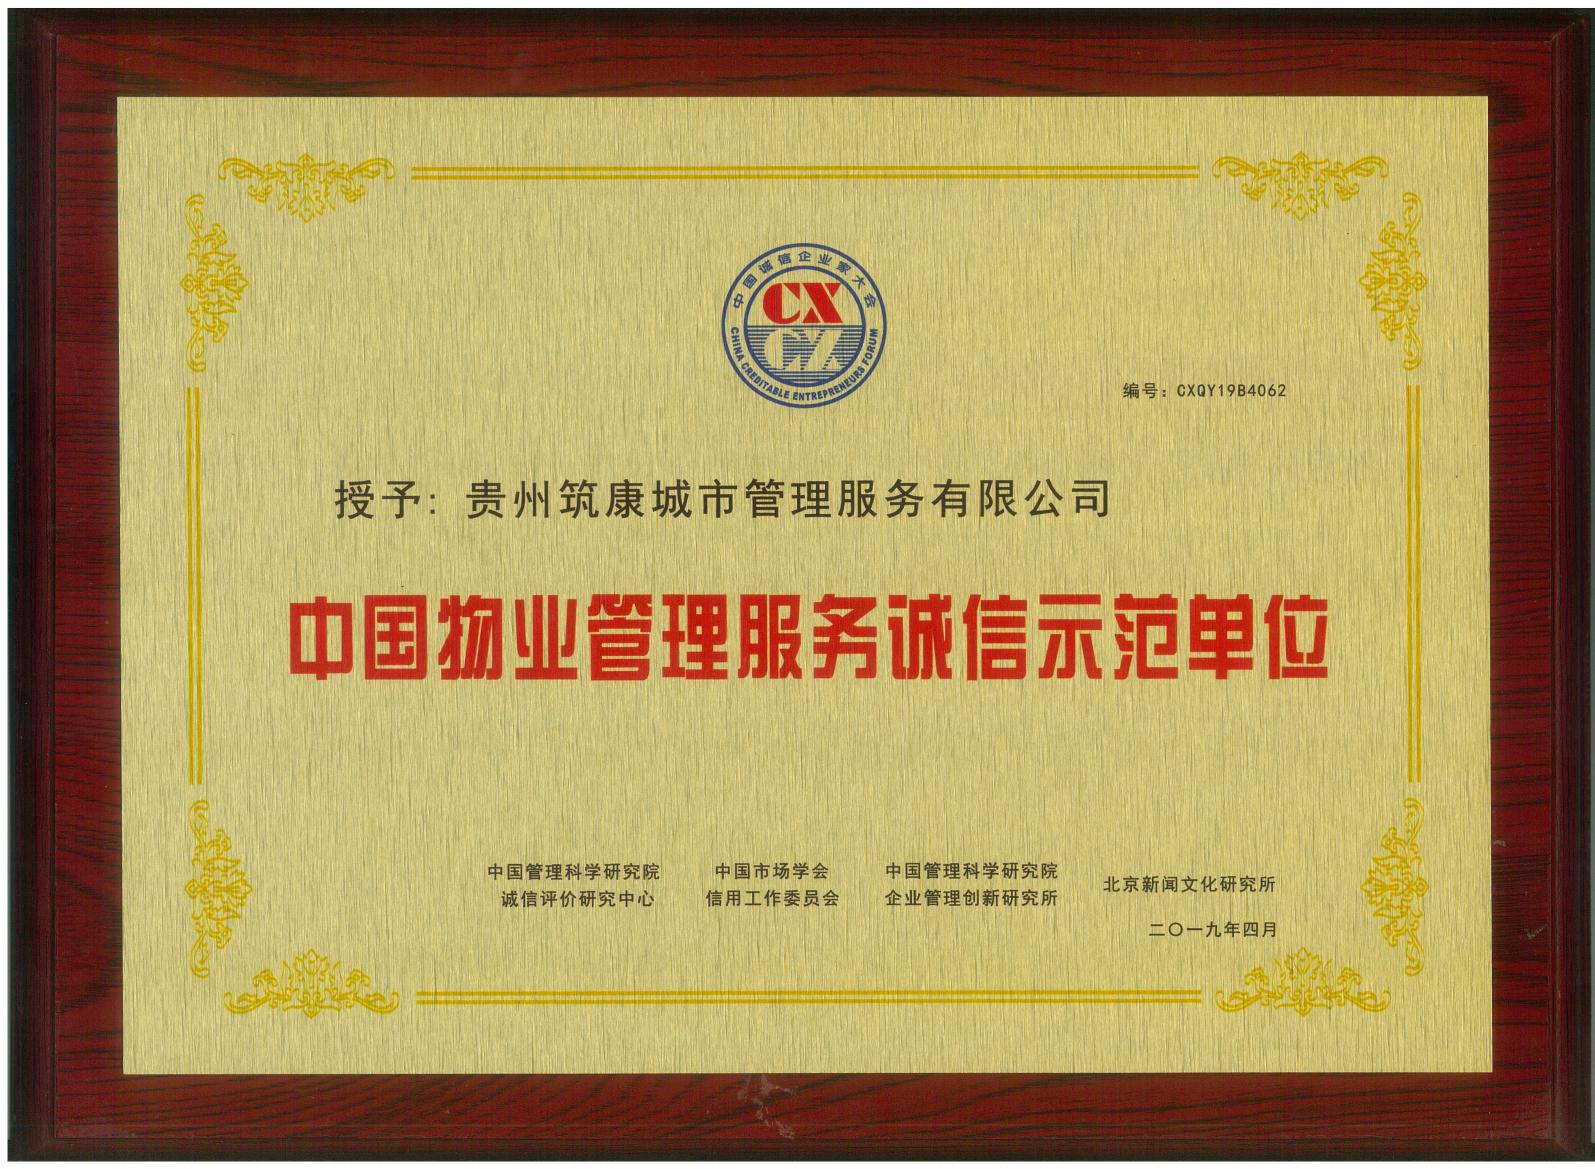 2019中国物业管理服务诚信荣誉示范单位 